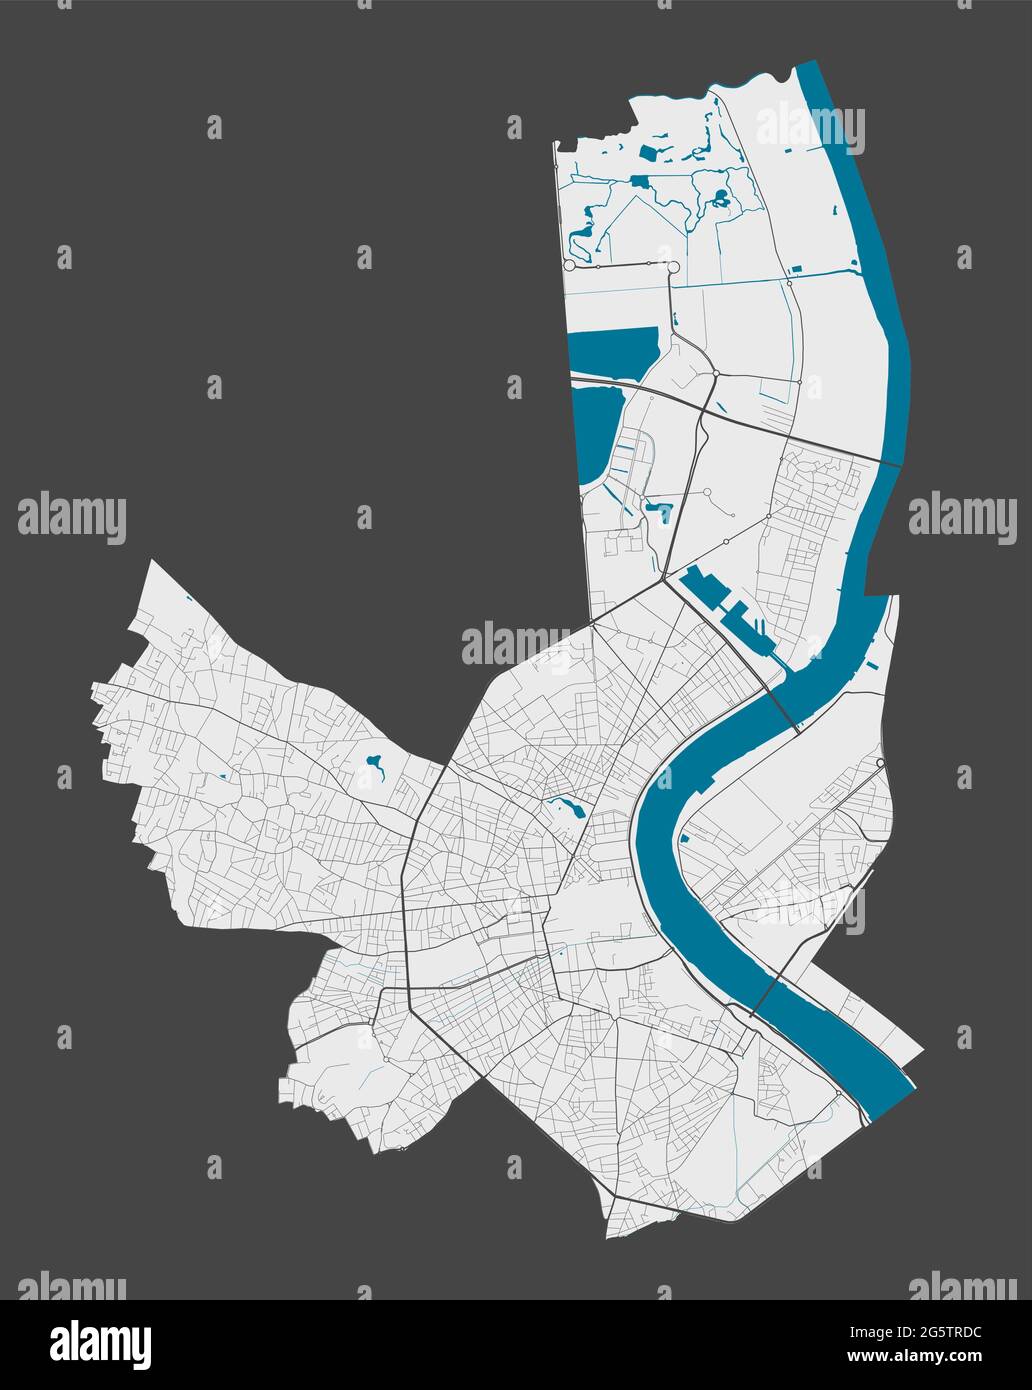 Mappa di Bordeaux. Mappa dettagliata dell'area amministrativa della città di Bordeaux. Panorama cittadino. Illustrazione vettoriale priva di royalty. Mappa con autostrade, stre Illustrazione Vettoriale